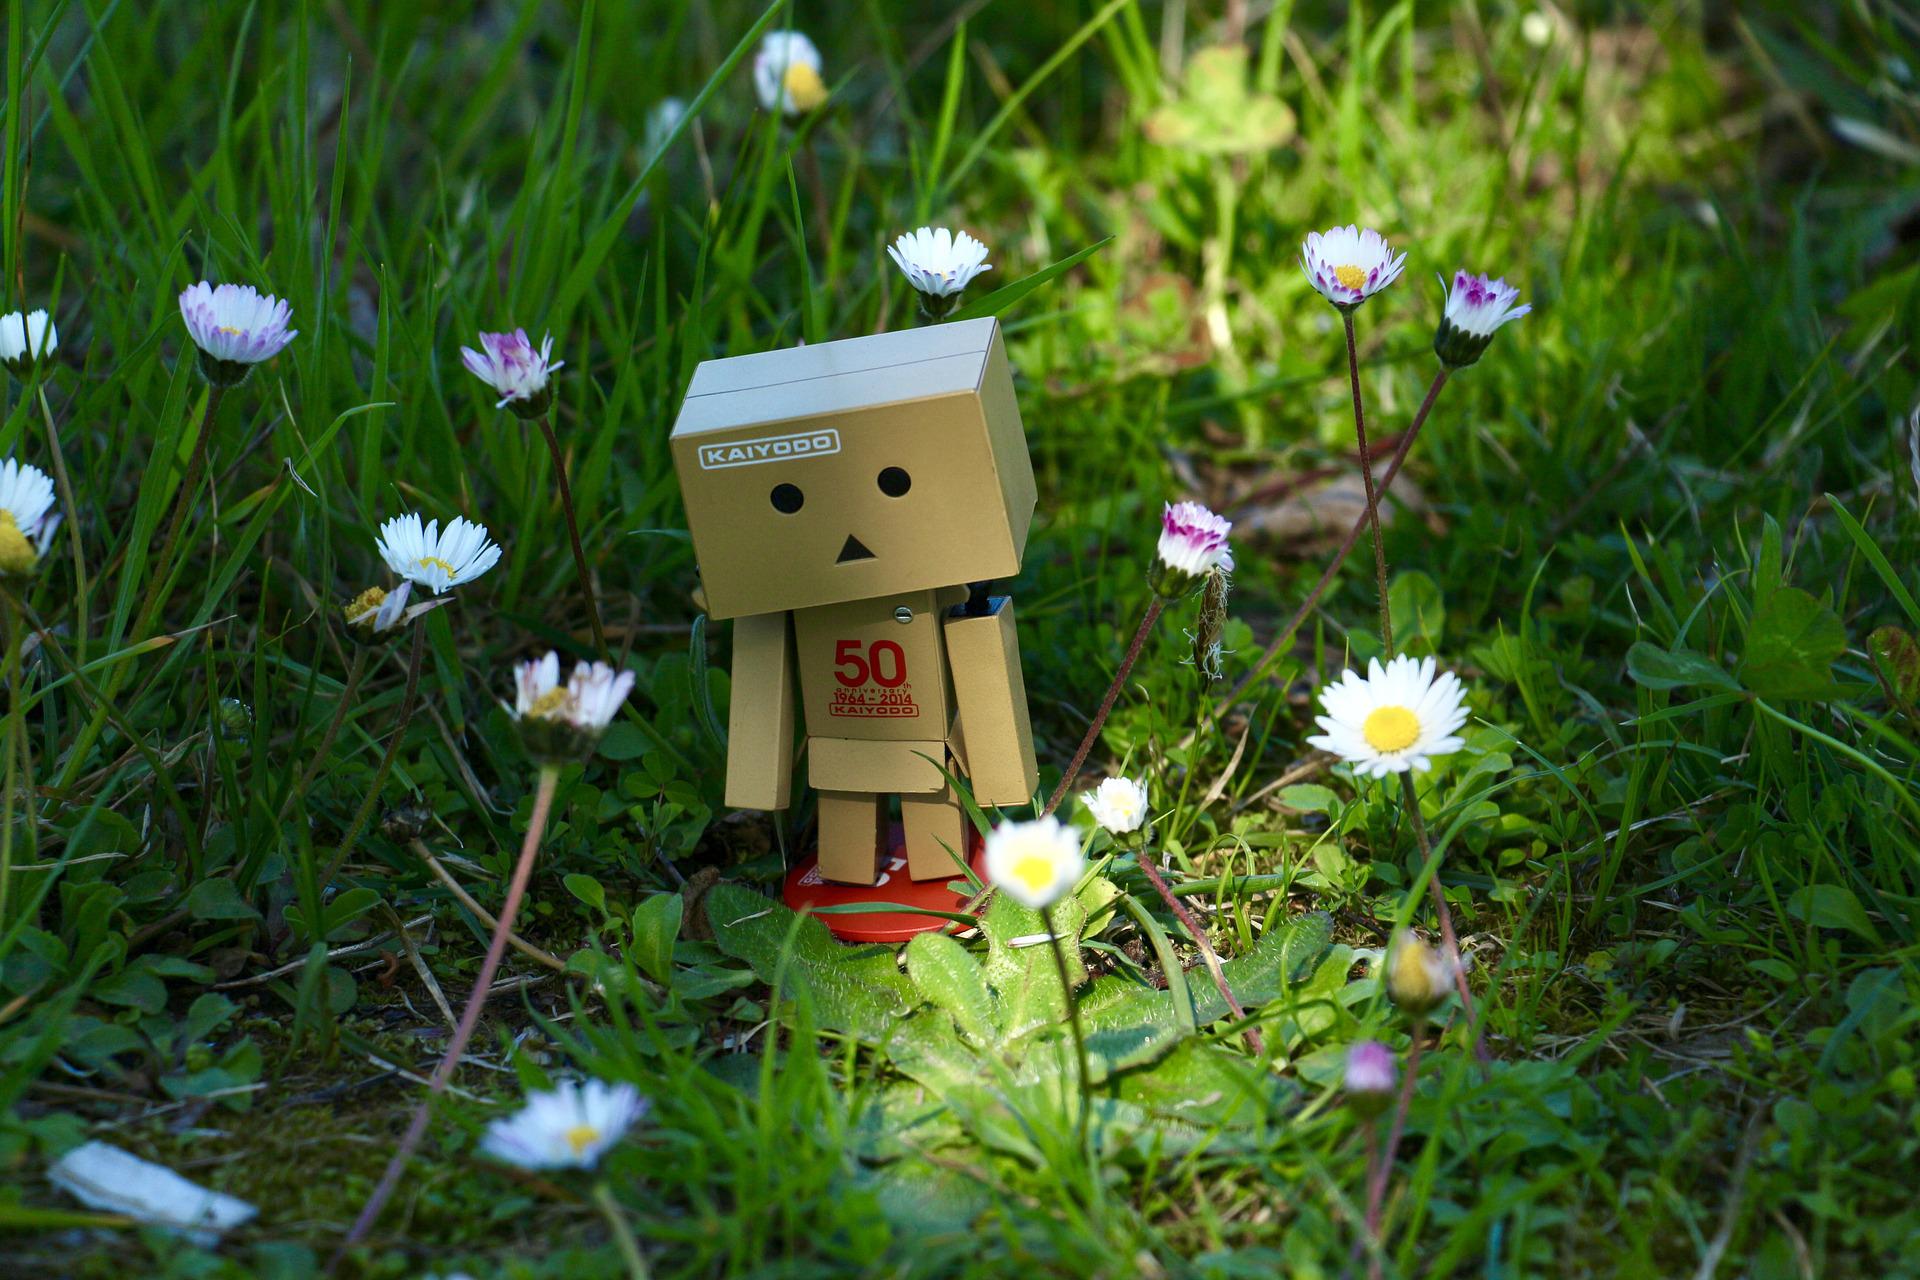 kuvassa pahvista tehty robotti mikä seisoo kukkakedolla ja näyttää hieman surulliselta